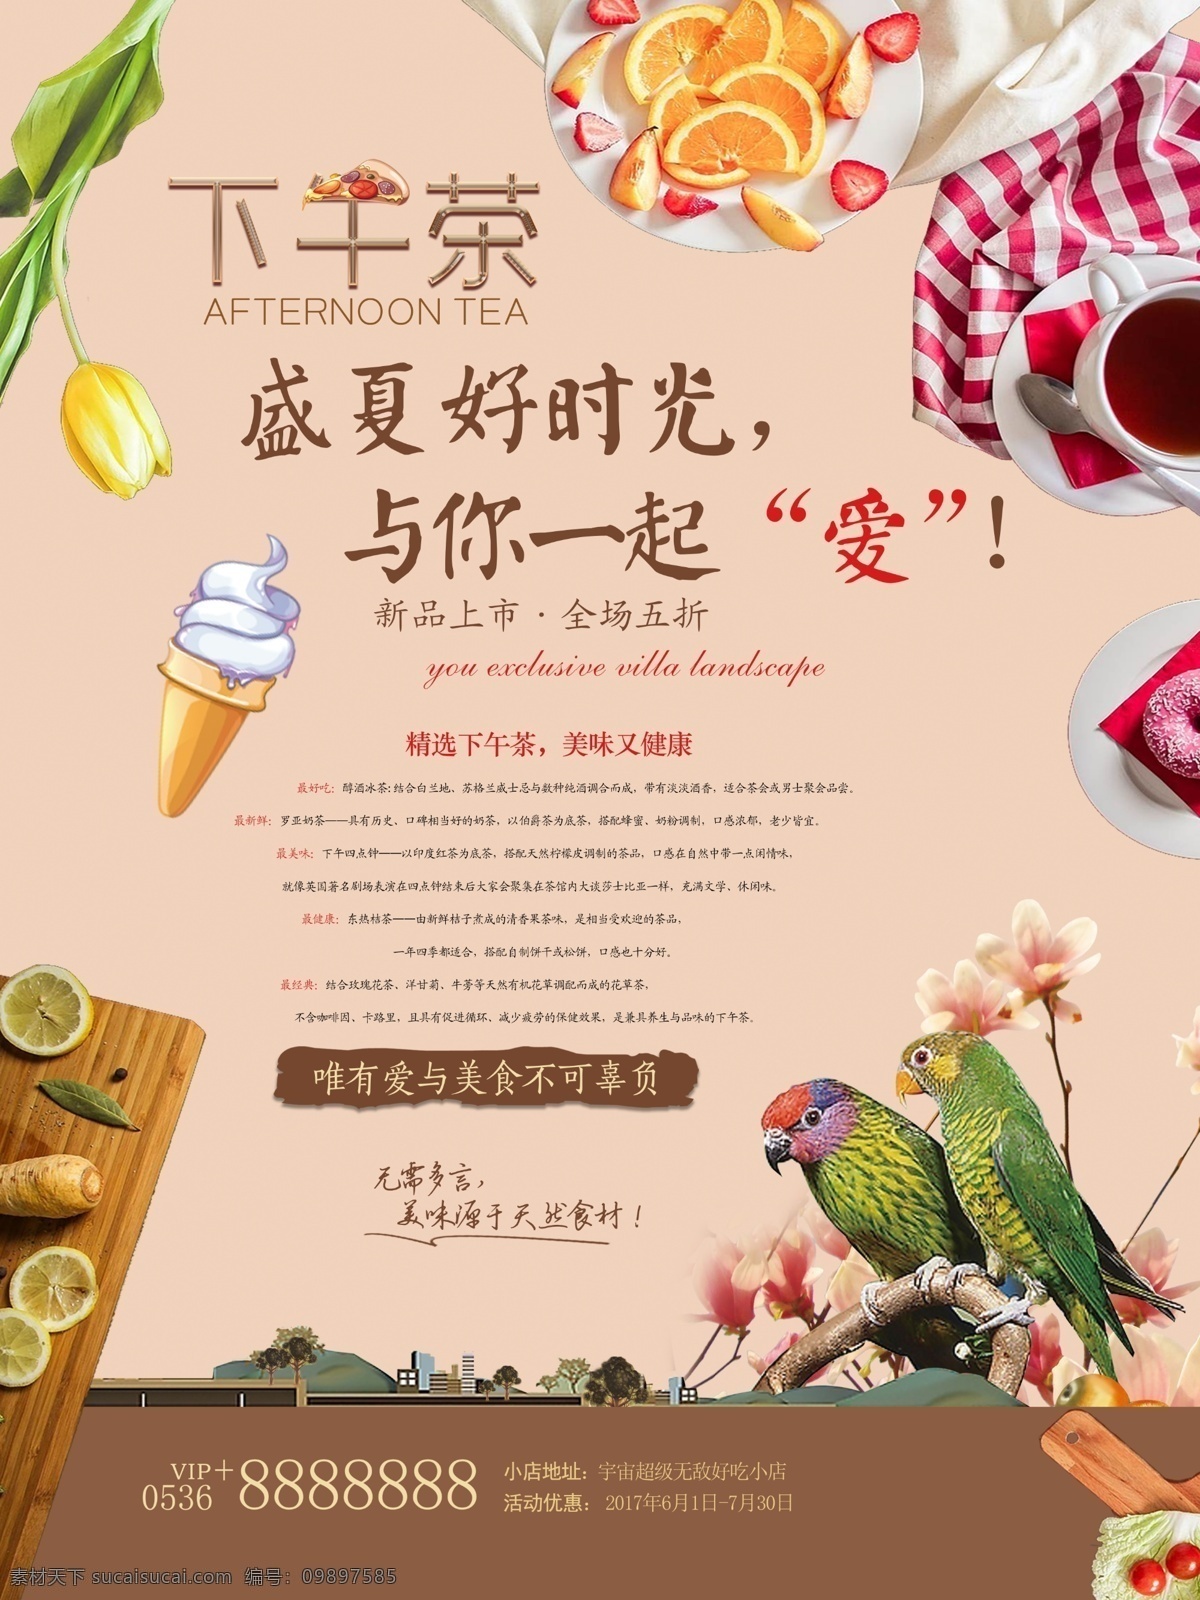 下午 茶 美食 小 清新 宣传单 海报 冰淇淋 鸟 花 水果 小吃